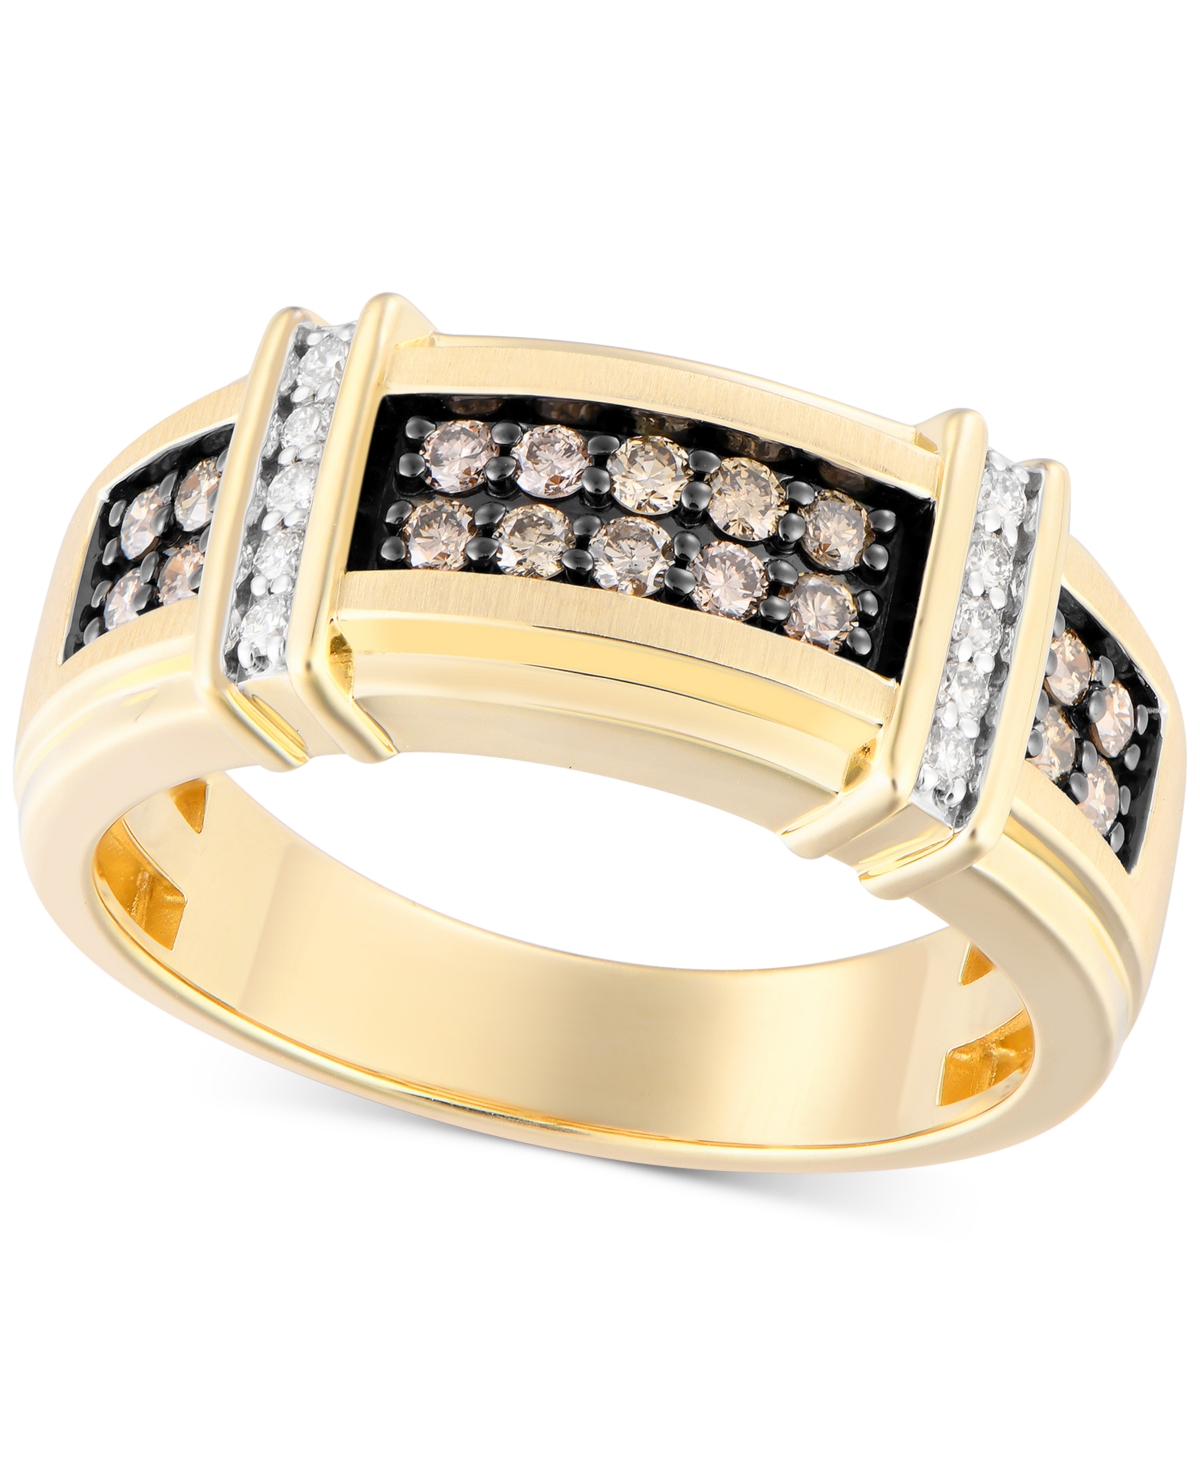 Men's Black & White Diamond Ring (1/2 ct. t.w.) in 10k Gold - Brown